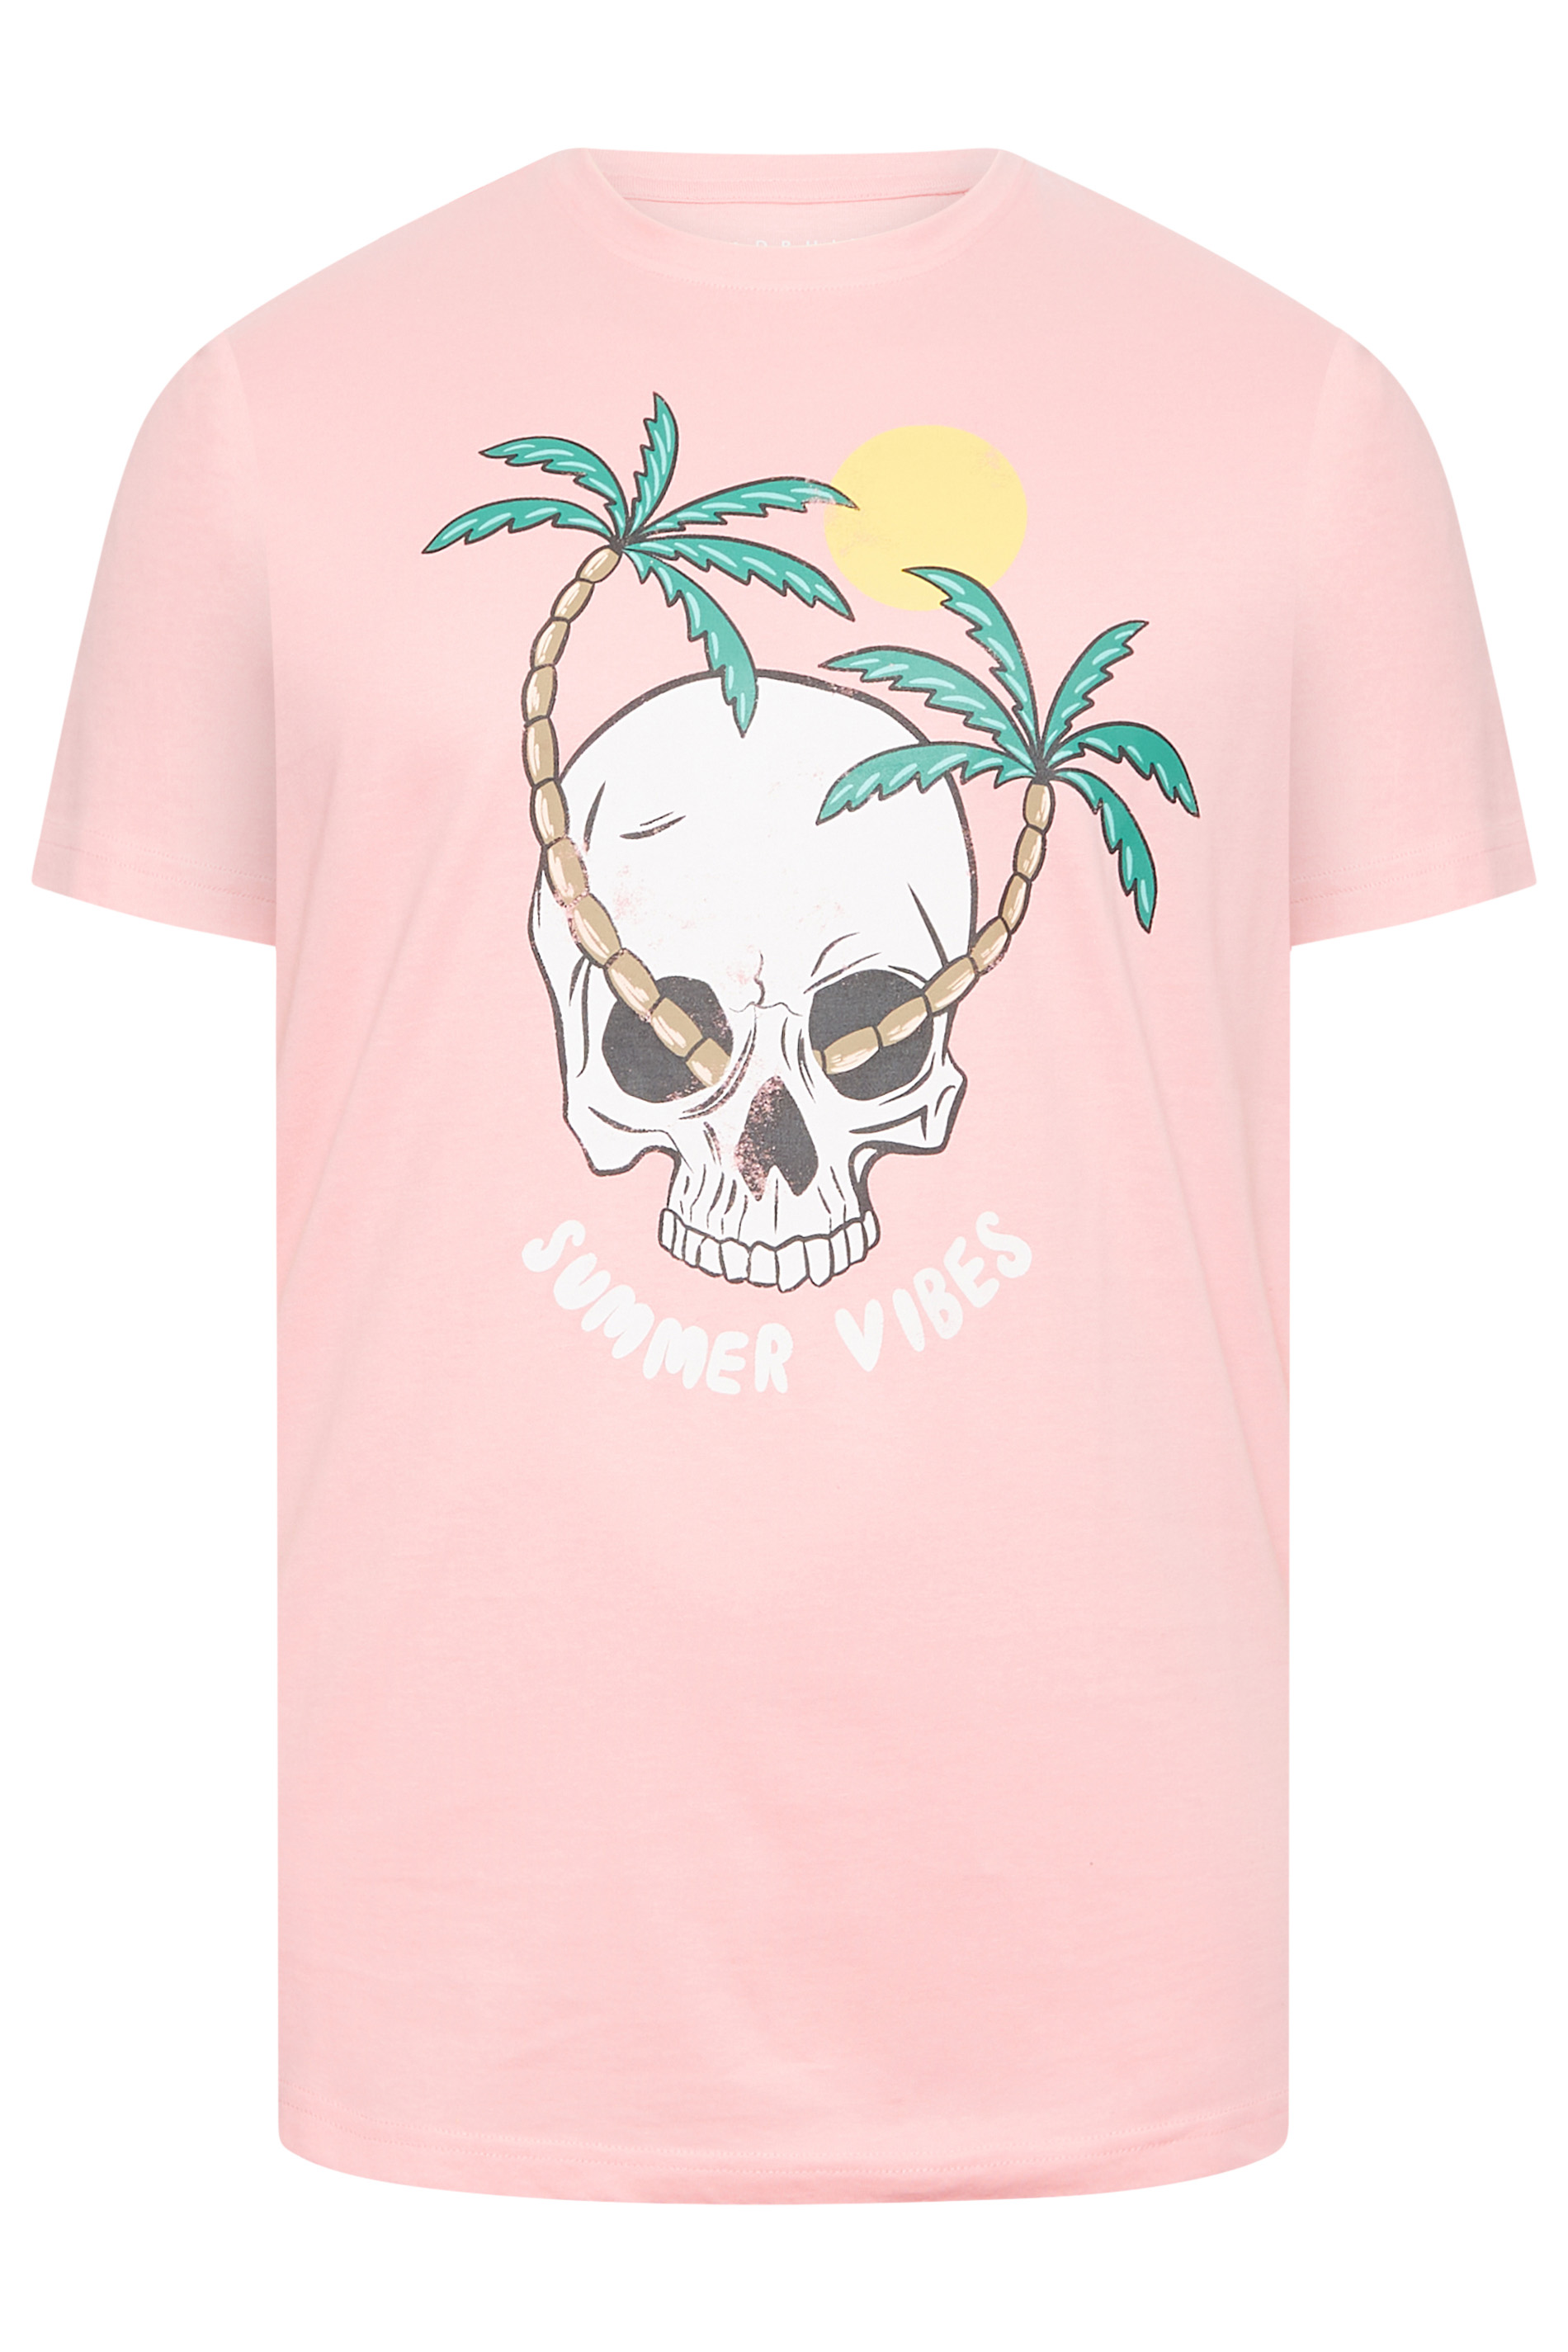 BadRhino Big & Tall Pink Summer Vibes T-Shirt | BadRhino 3